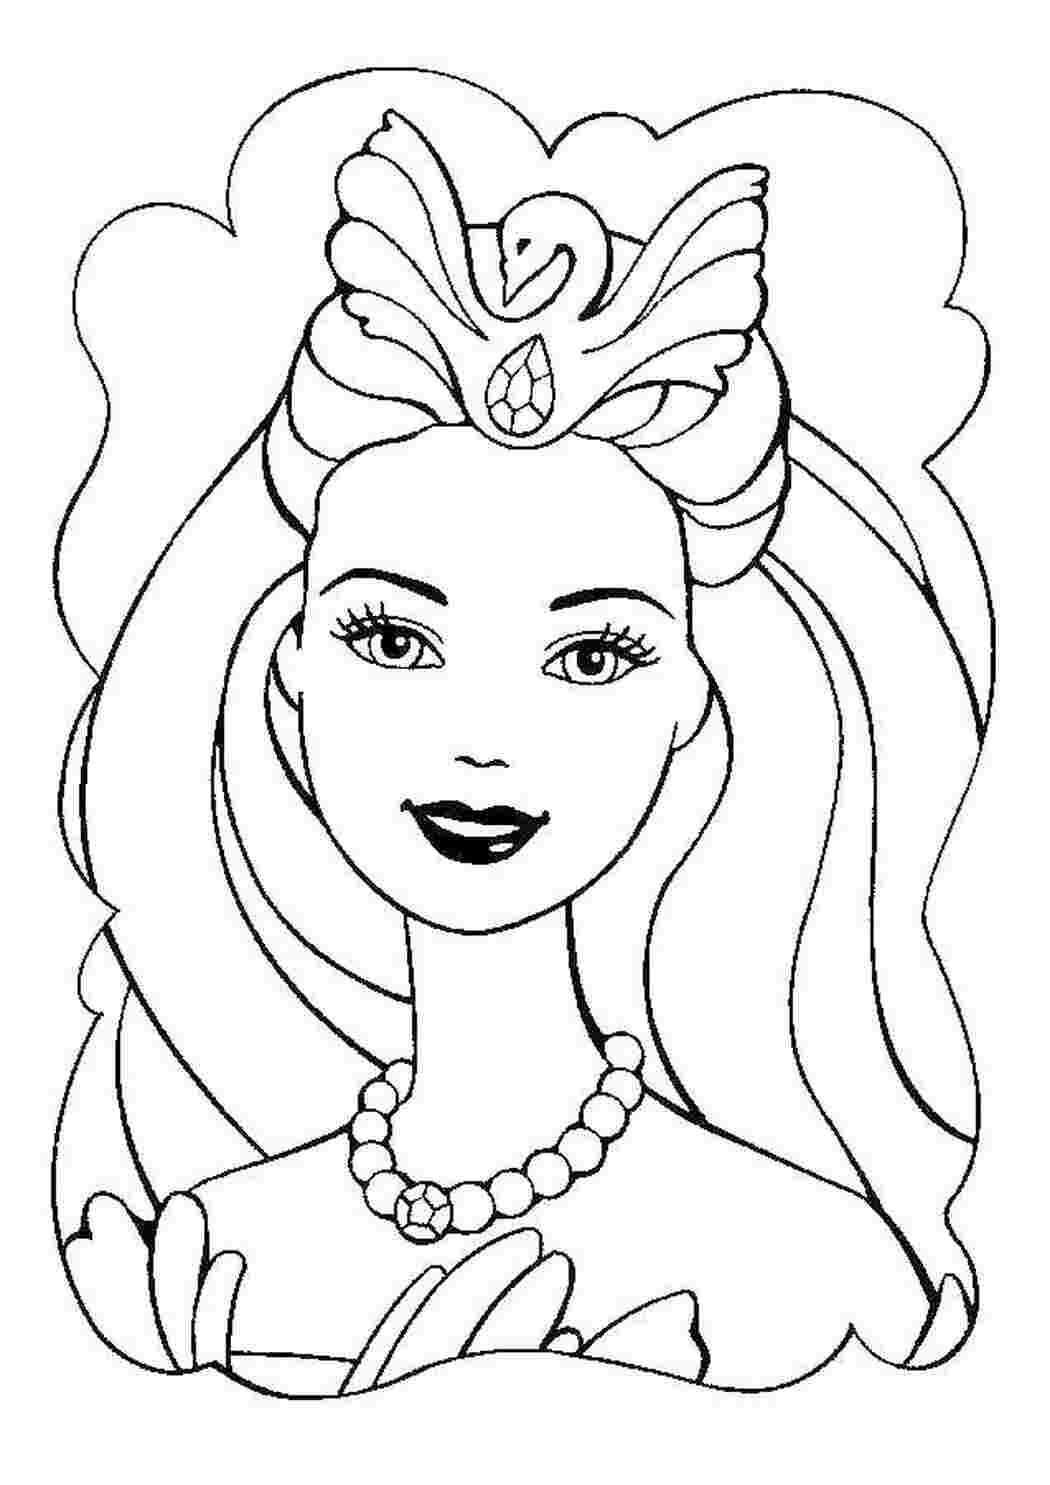 Раскраски Портрет лебединой принцессы-барби барби Лебединое озеро, барби, принцесса